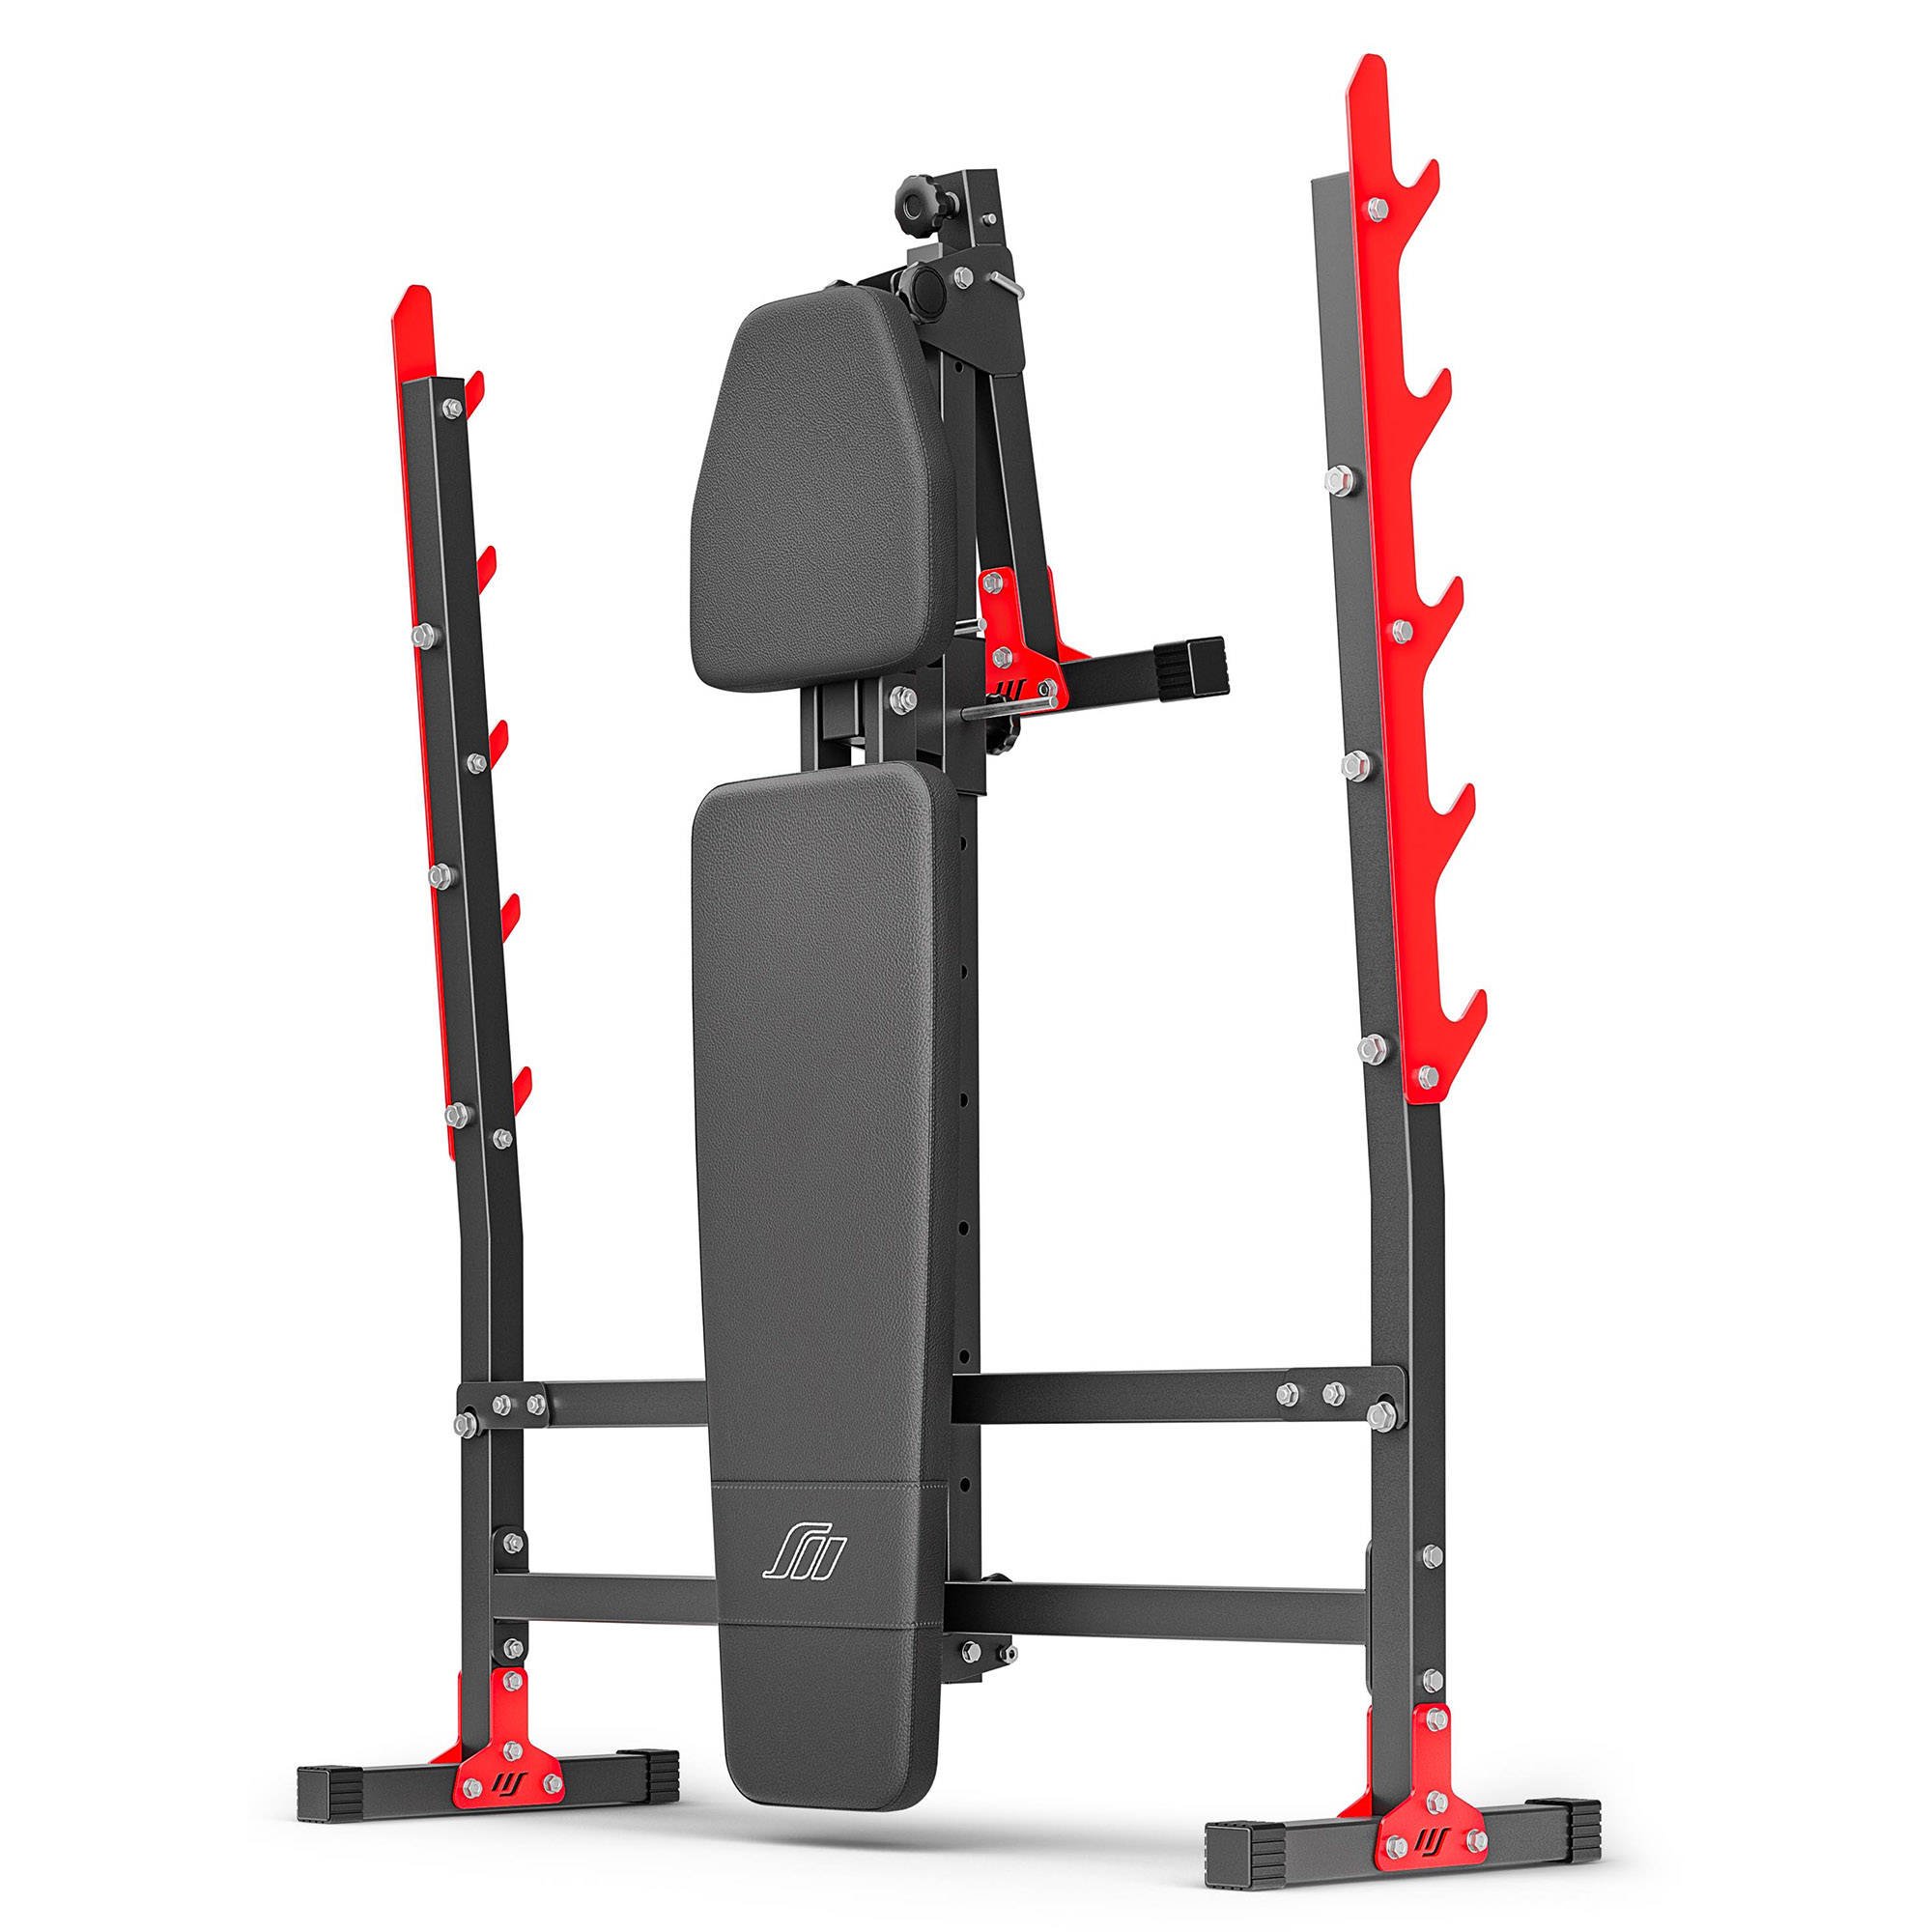 Banc de musculation pour home-gym compact avec siège et dossier